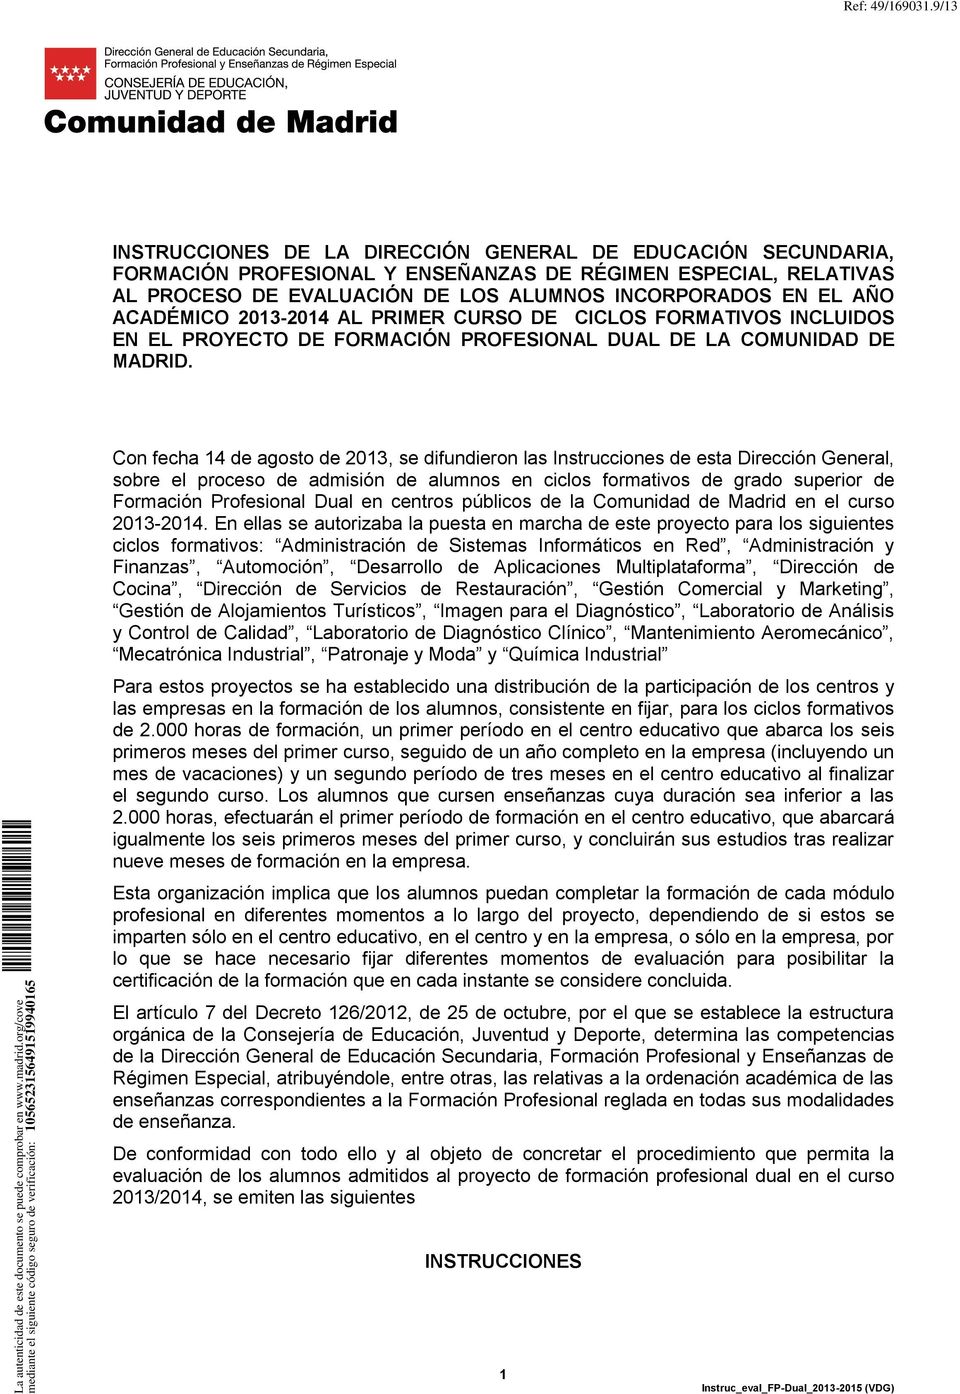 ACADÉMICO 2013-2014 AL PRIMER CURSO DE CICLOS FORMATIVOS INCLUIDOS EN EL PROYECTO DE FORMACIÓN PROFESIONAL DUAL DE LA COMUNIDAD DE MADRID.